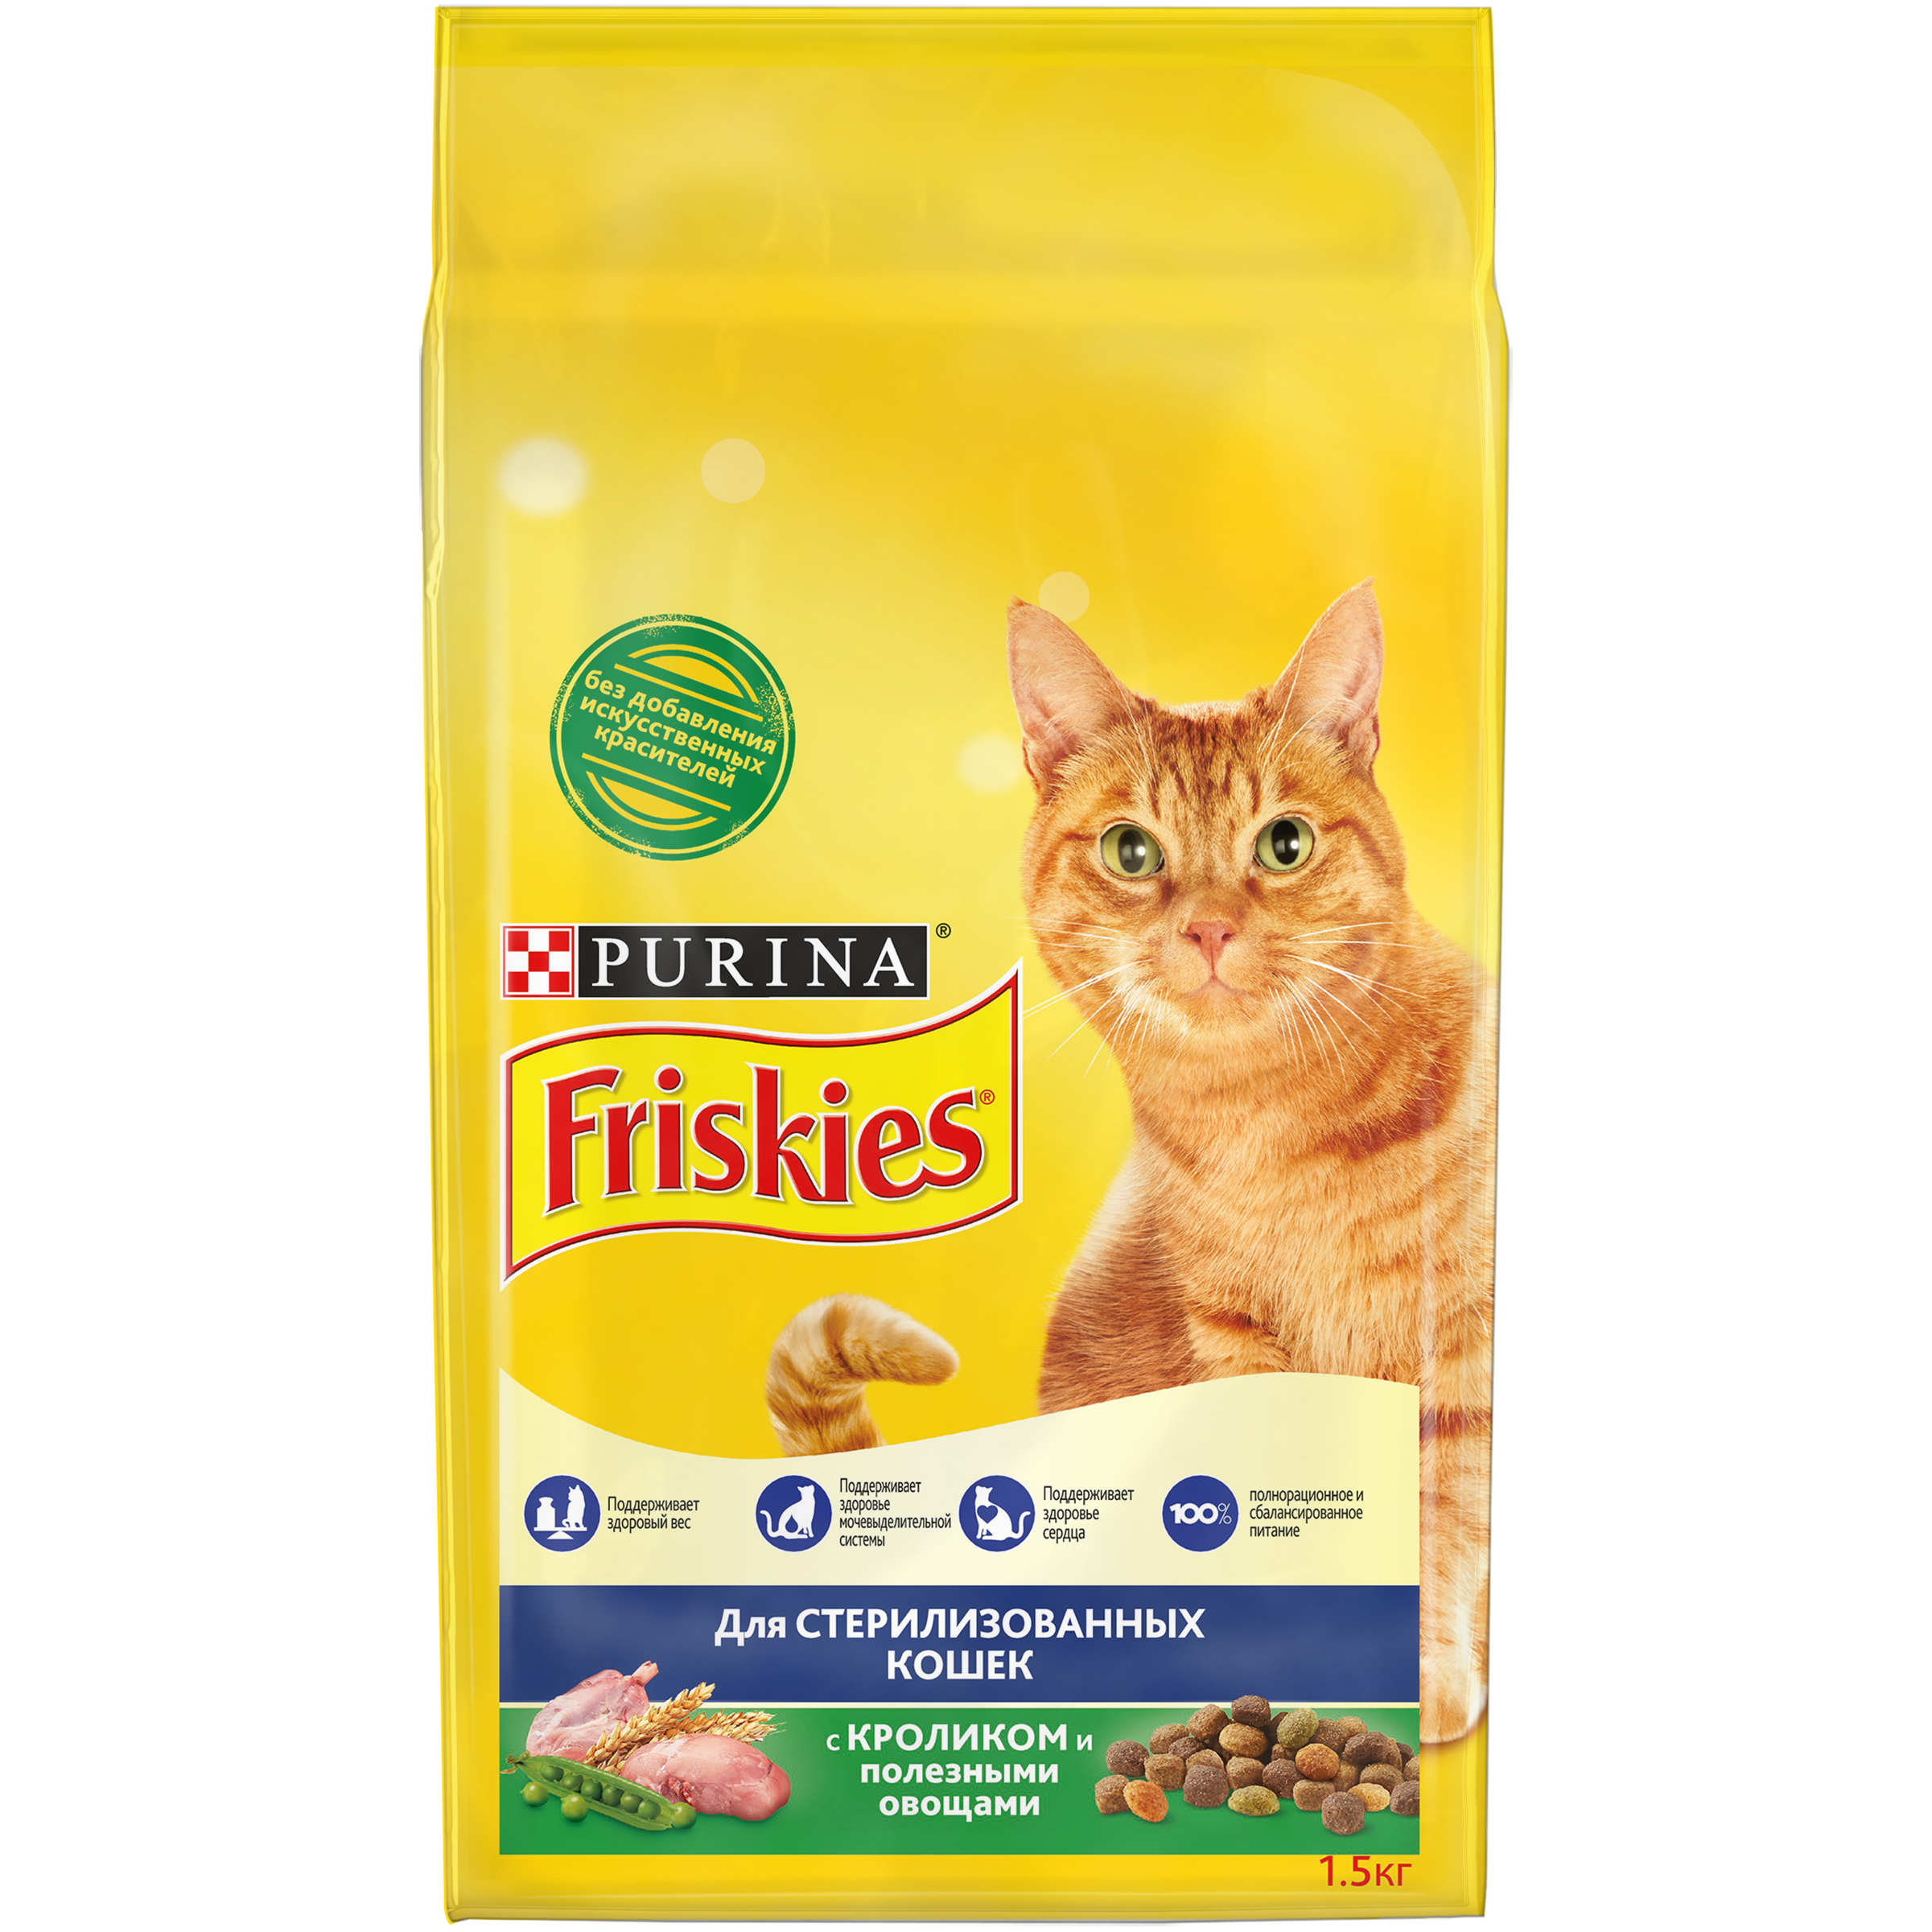 Сухой корм для кошек Friskies, для стерилизованных, с кроликом и овощами, 1,5 кг